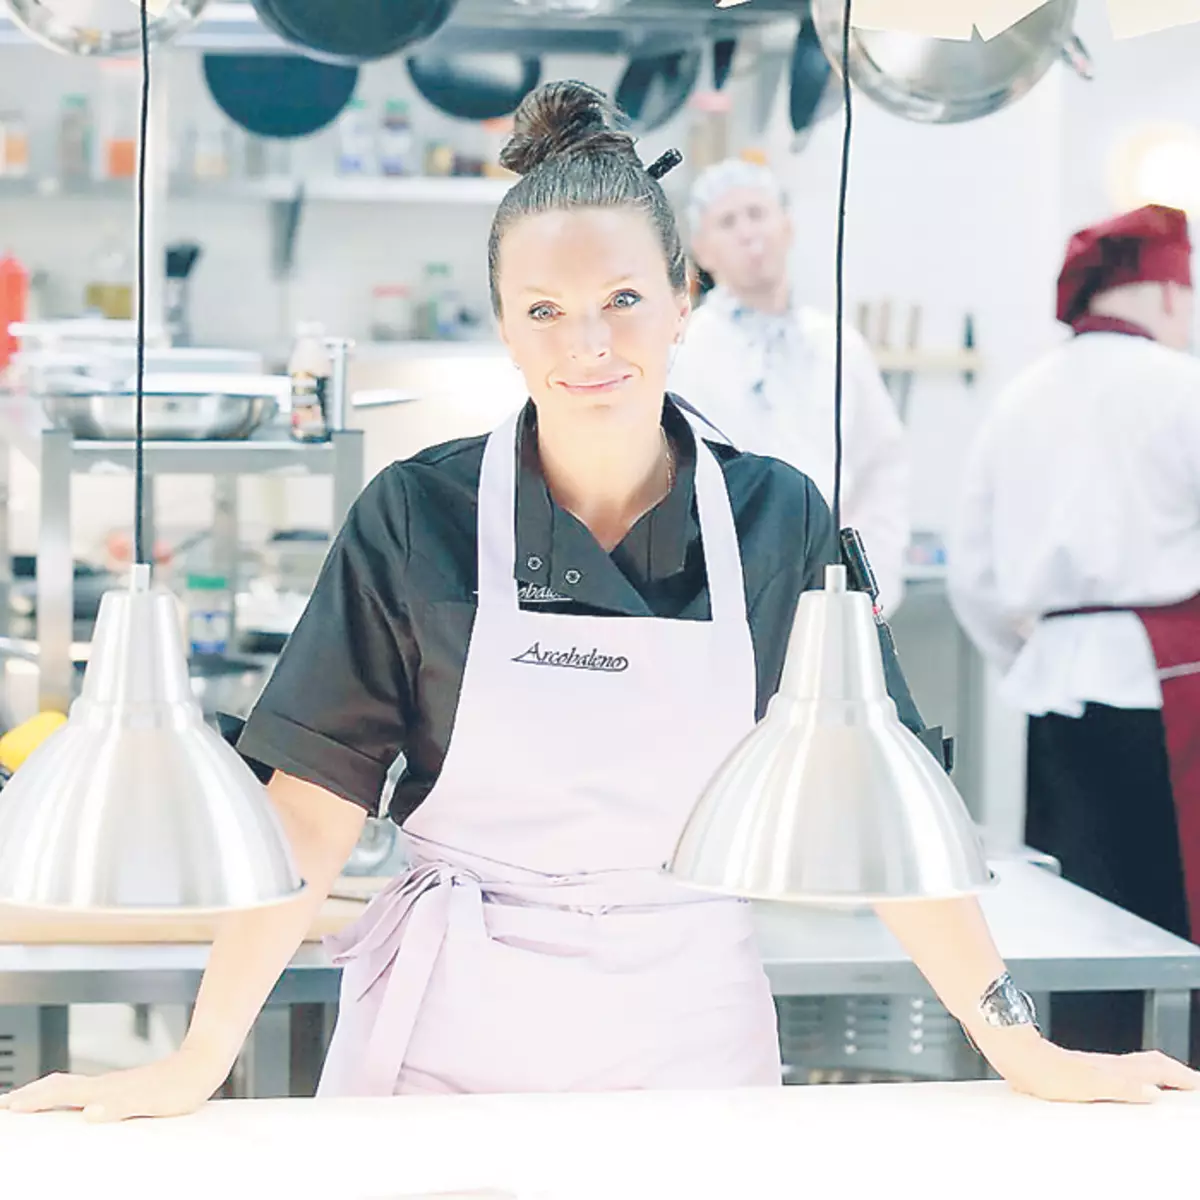 在电视剧中拍摄“厨房”女星笑着记住。在套装上是一个伟大的氛围，码头学到了许多优秀的烹饪食谱